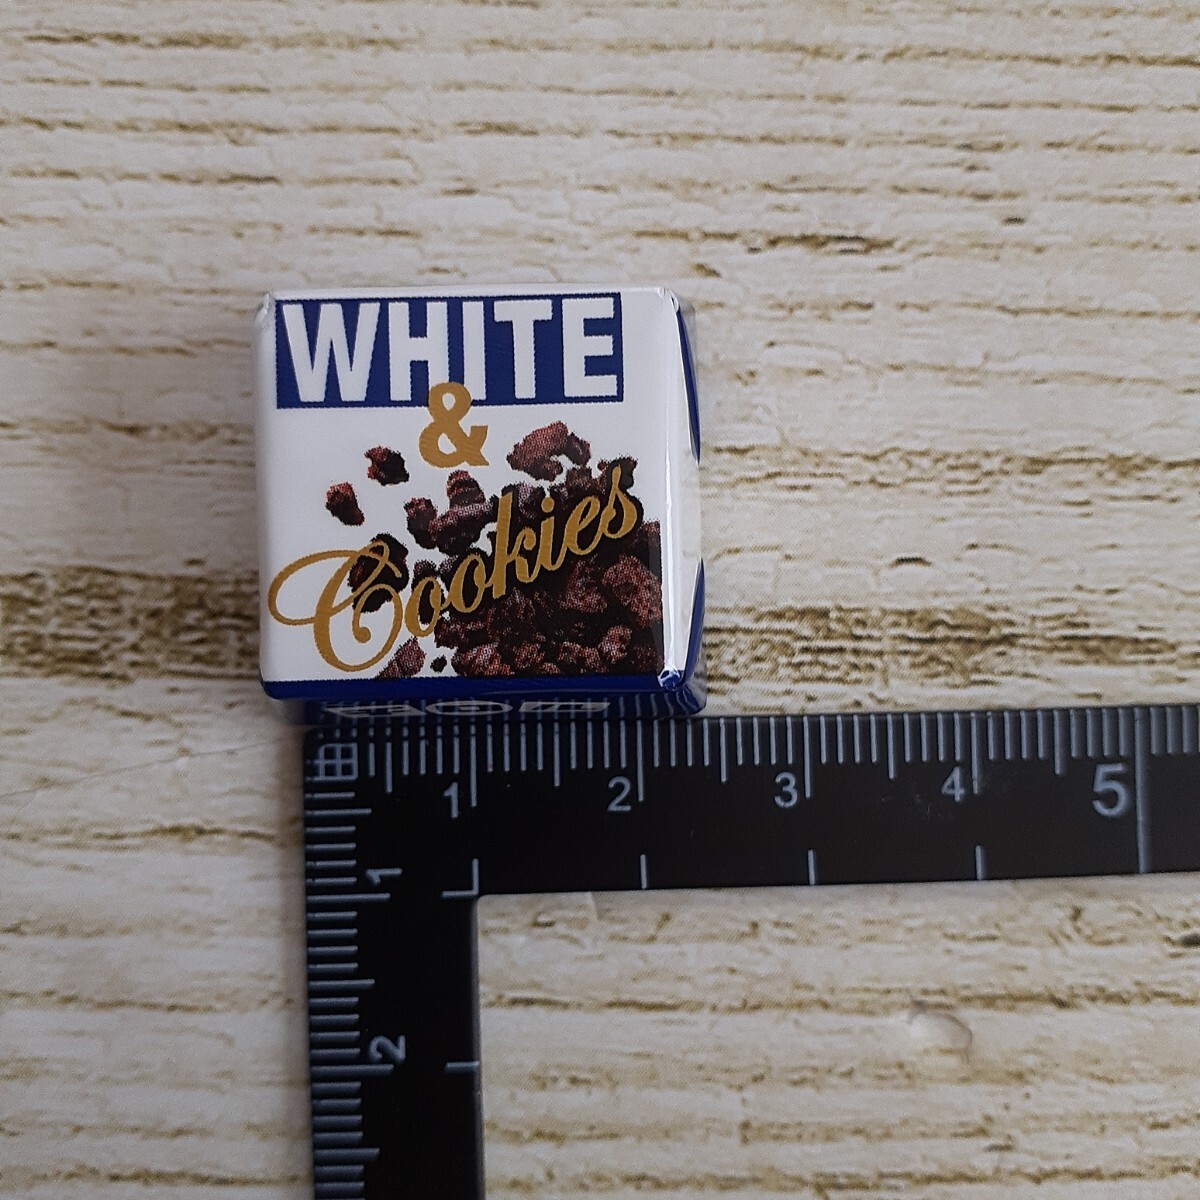 2.5cm angle chiroru chocolate white & cookie 56 piece 